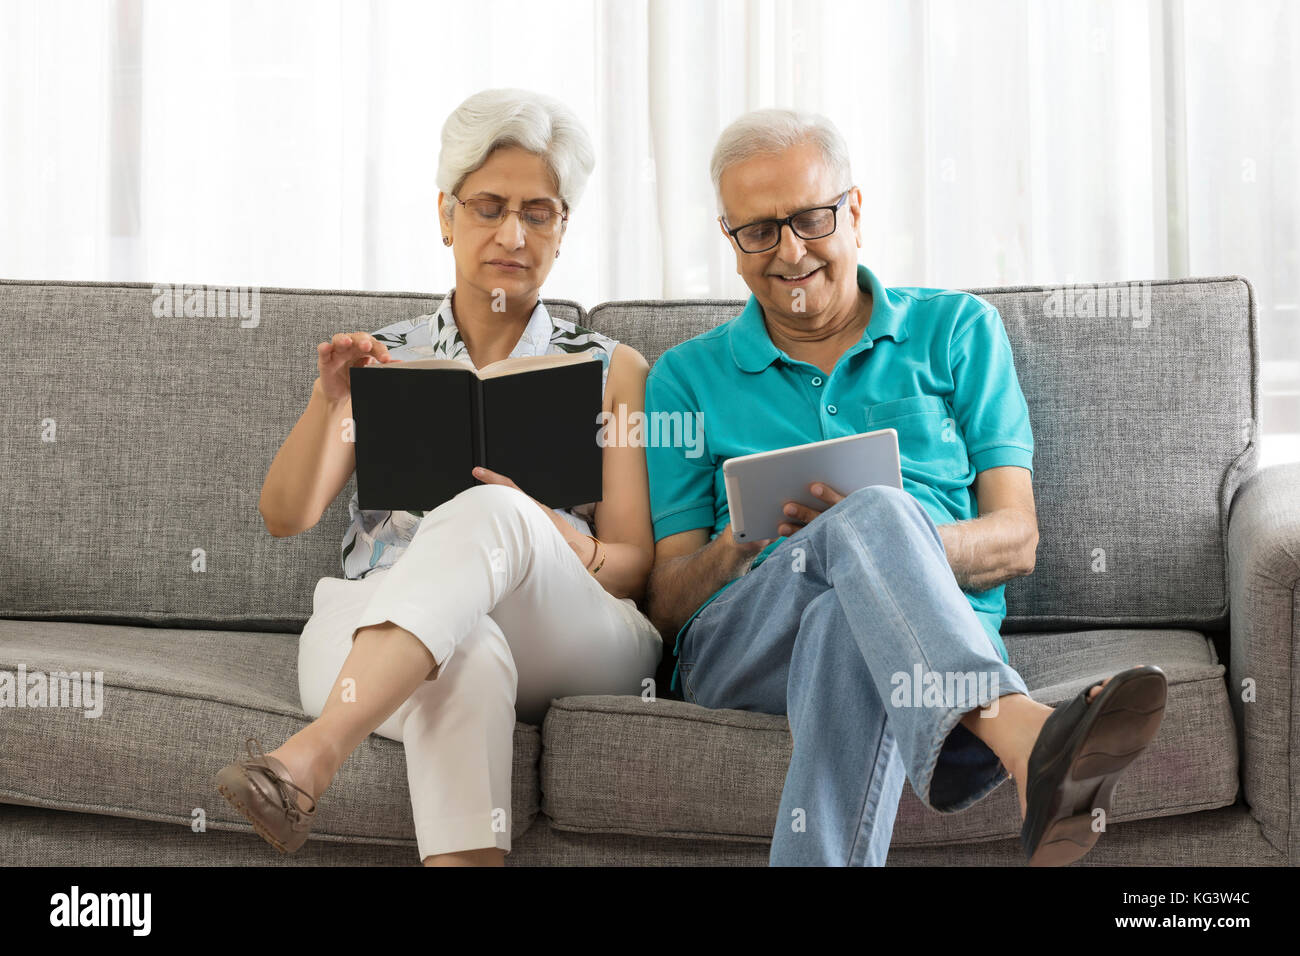 Ältere Frau mit Buch und älterer Mann mit digitalen tablet Sitzen auf einem Sofa Stockfoto